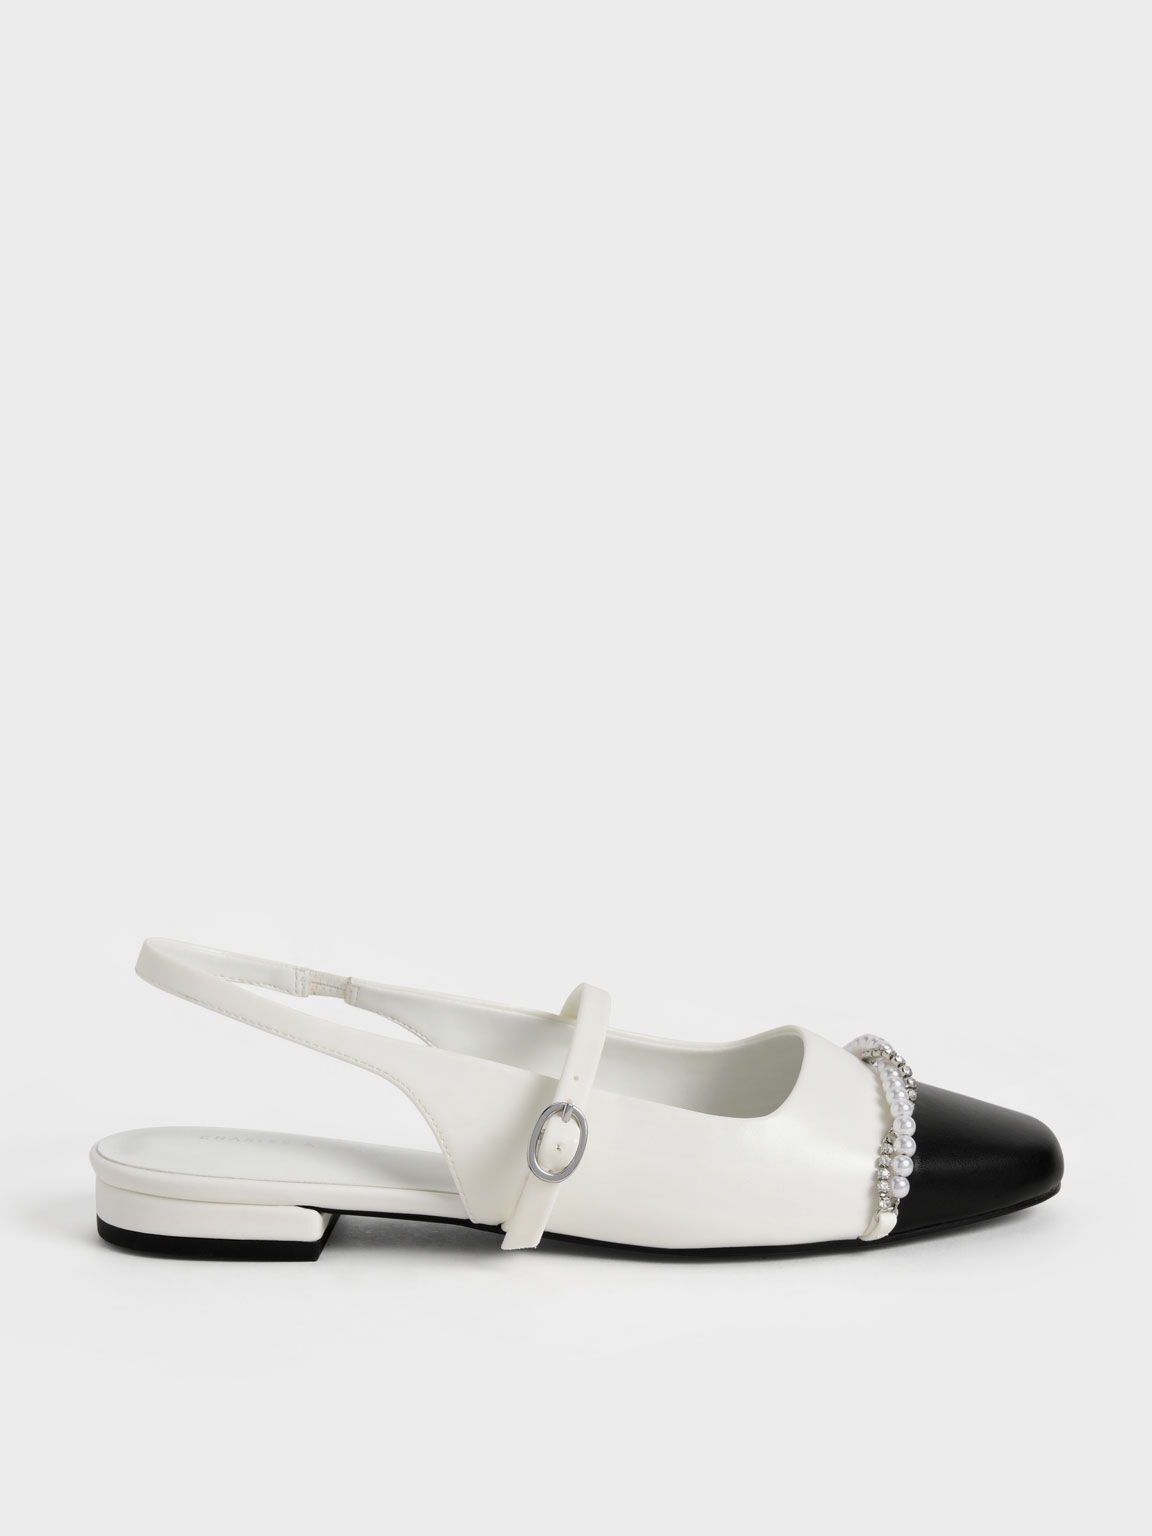 Bead & Gem-Embellished Slingback Ballerinas, White, hi-res